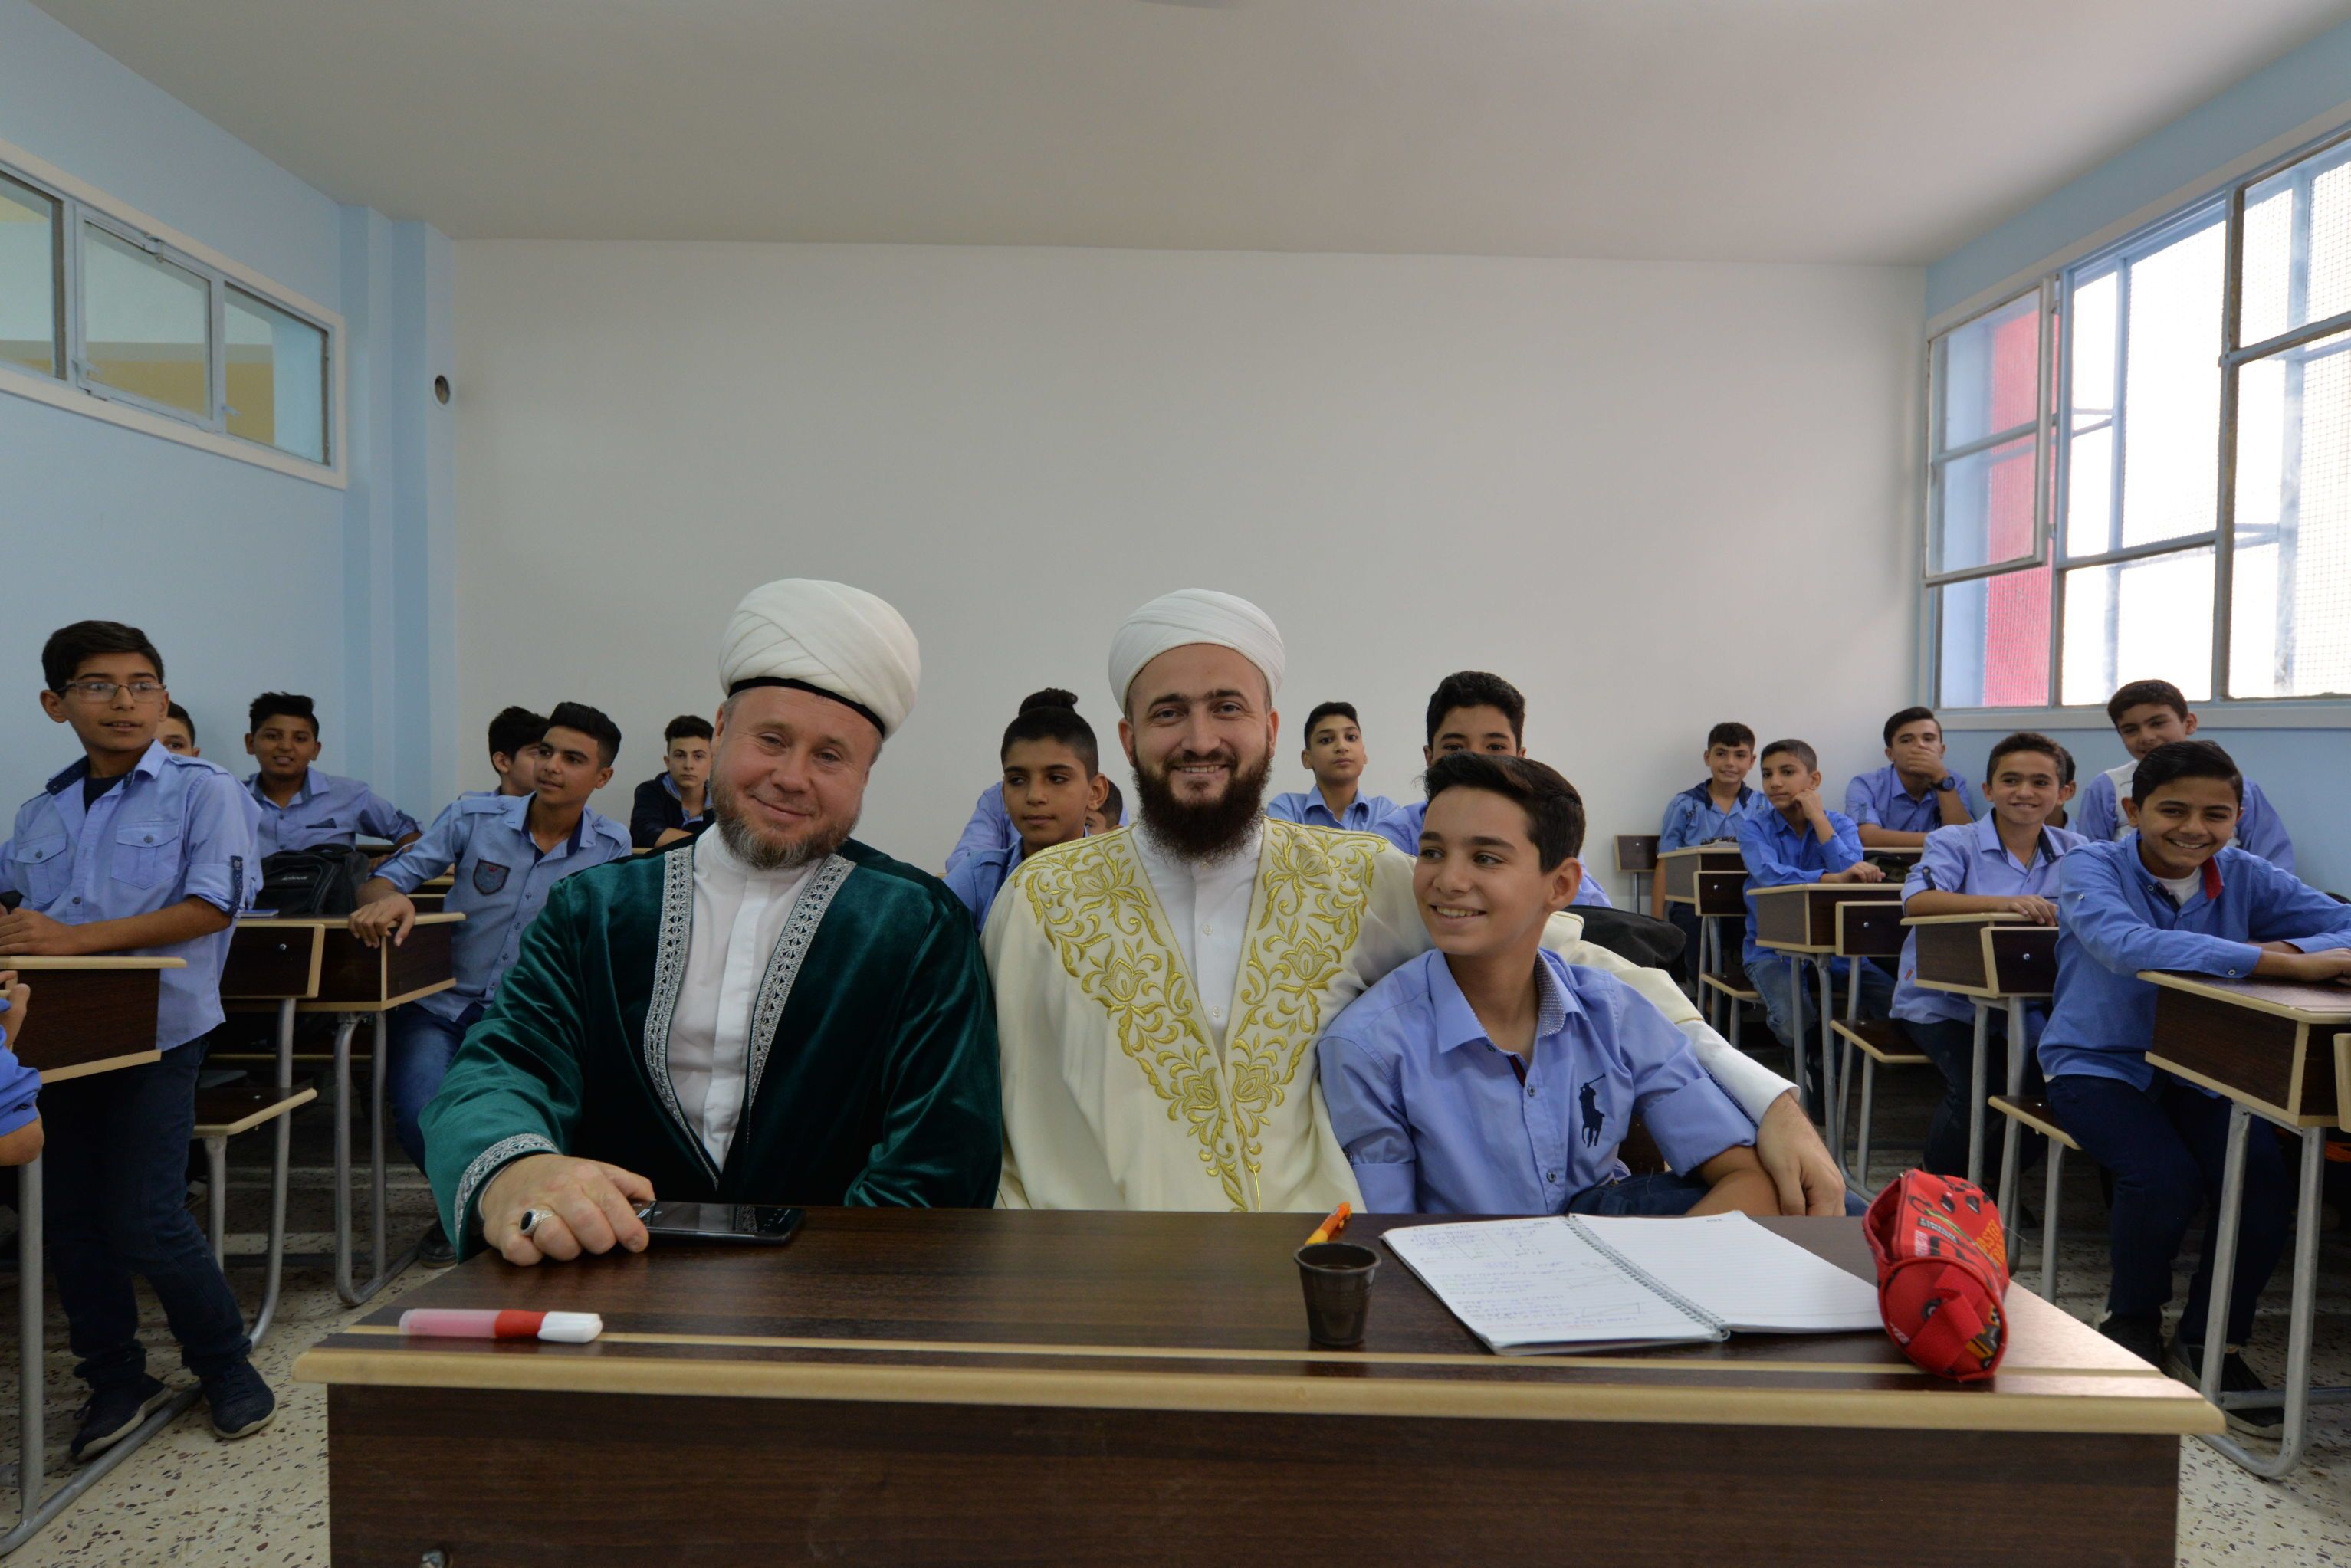 افتتاح مدرسة عريقة بدمشق دمرها الإرهاب وأعاد مجمع الأديان الروسي إحياءها